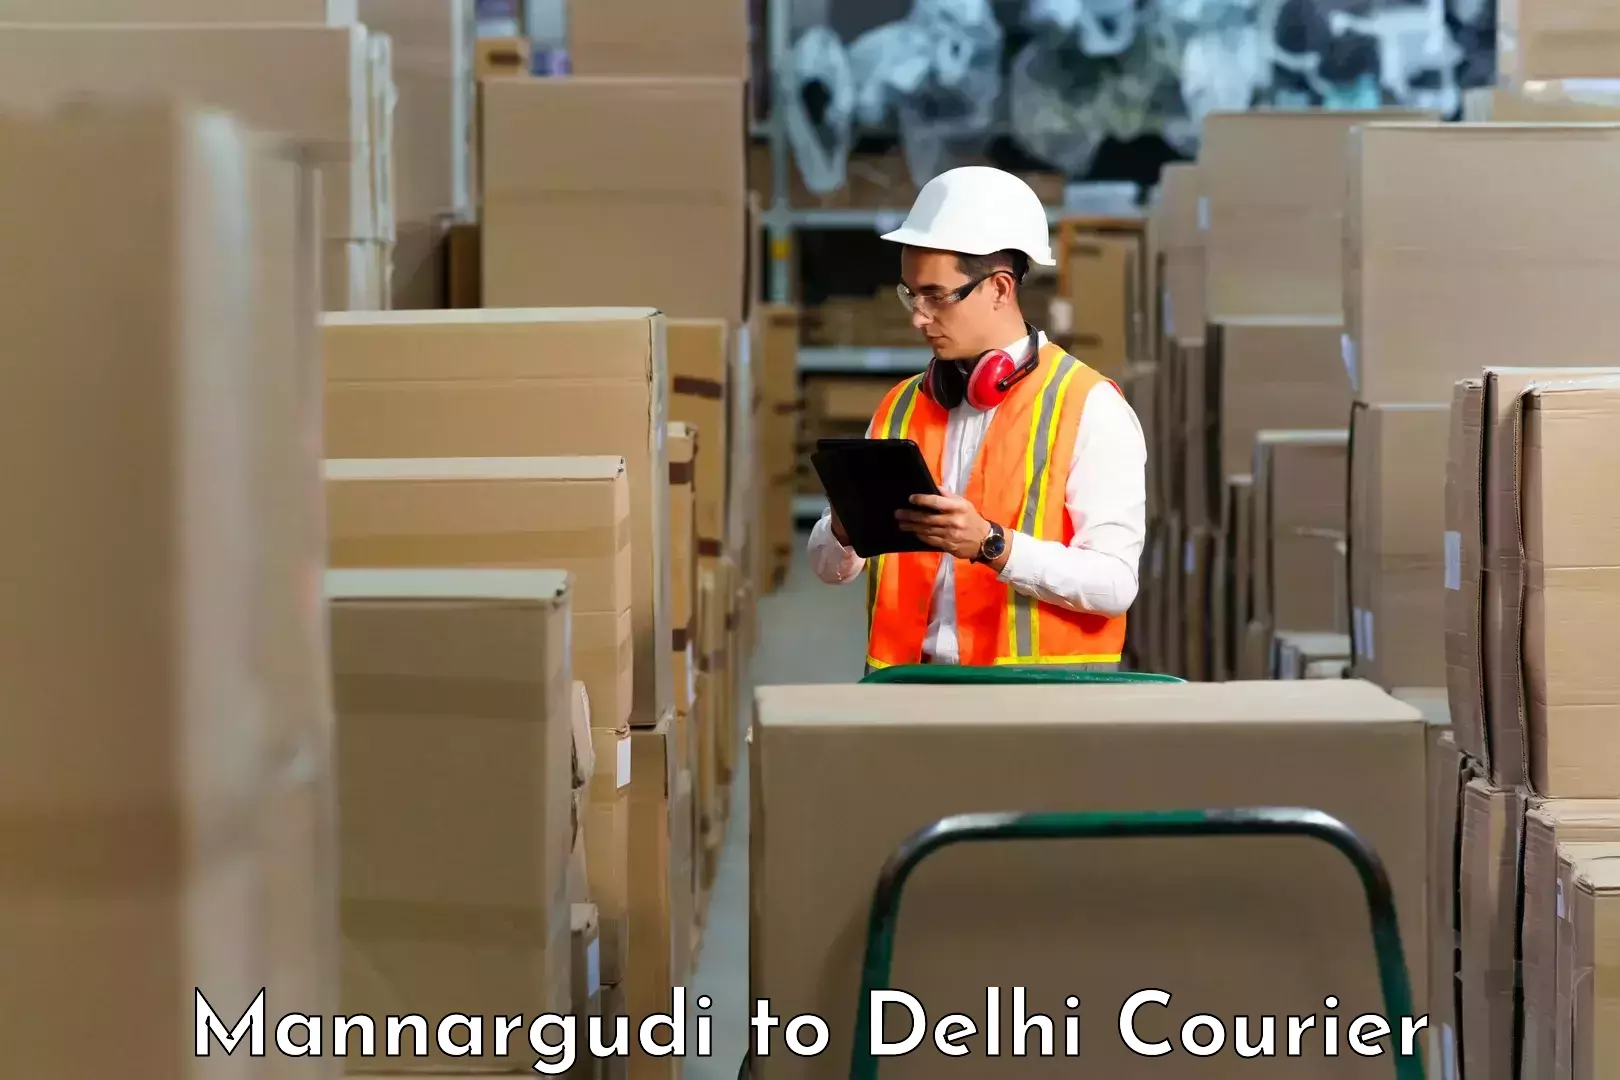 Modern courier technology Mannargudi to NIT Delhi